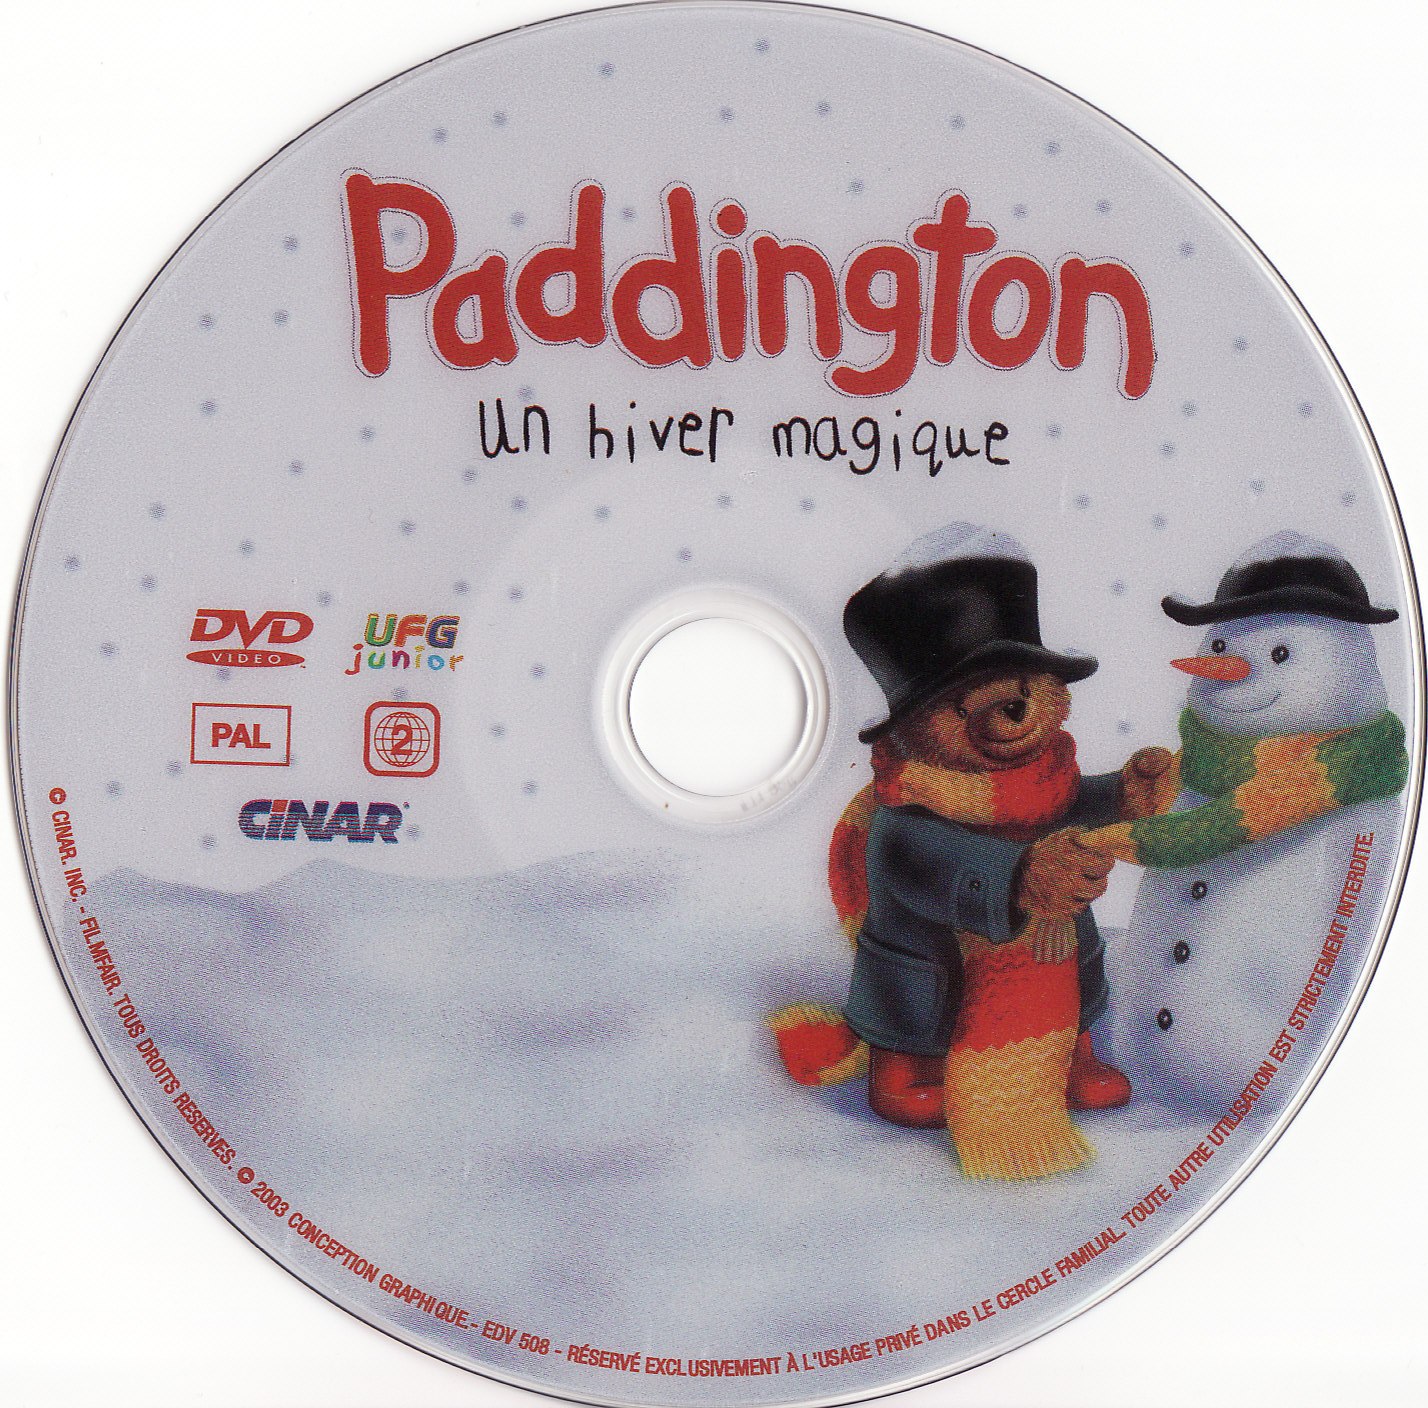 Paddington - un hiver magique